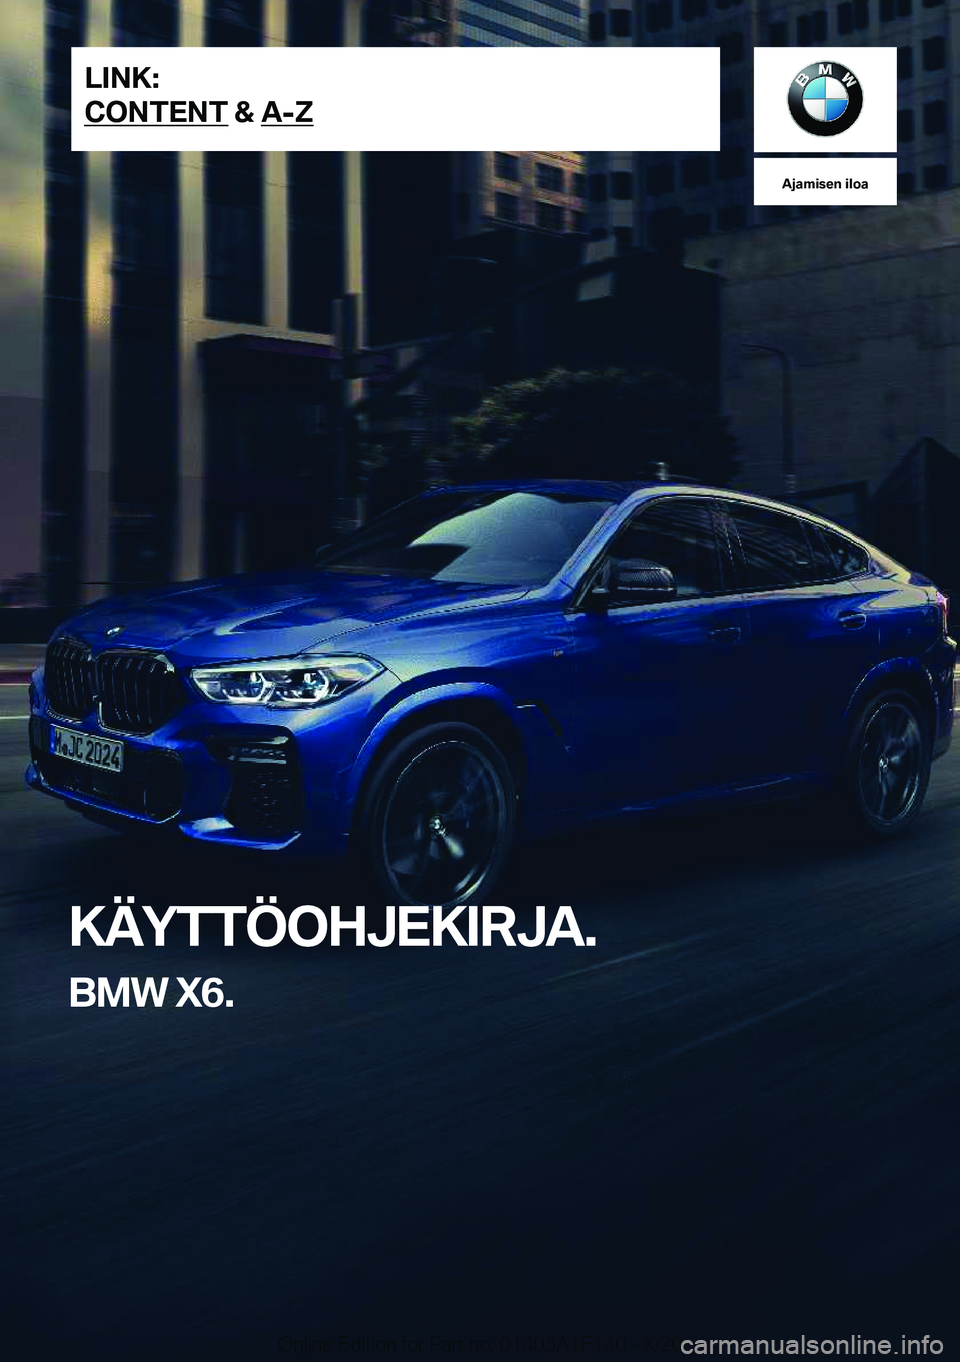 BMW X6 2021  Omistajan Käsikirja (in Finnish) �A�j�a�m�i�s�e�n��i�l�o�a
�K�